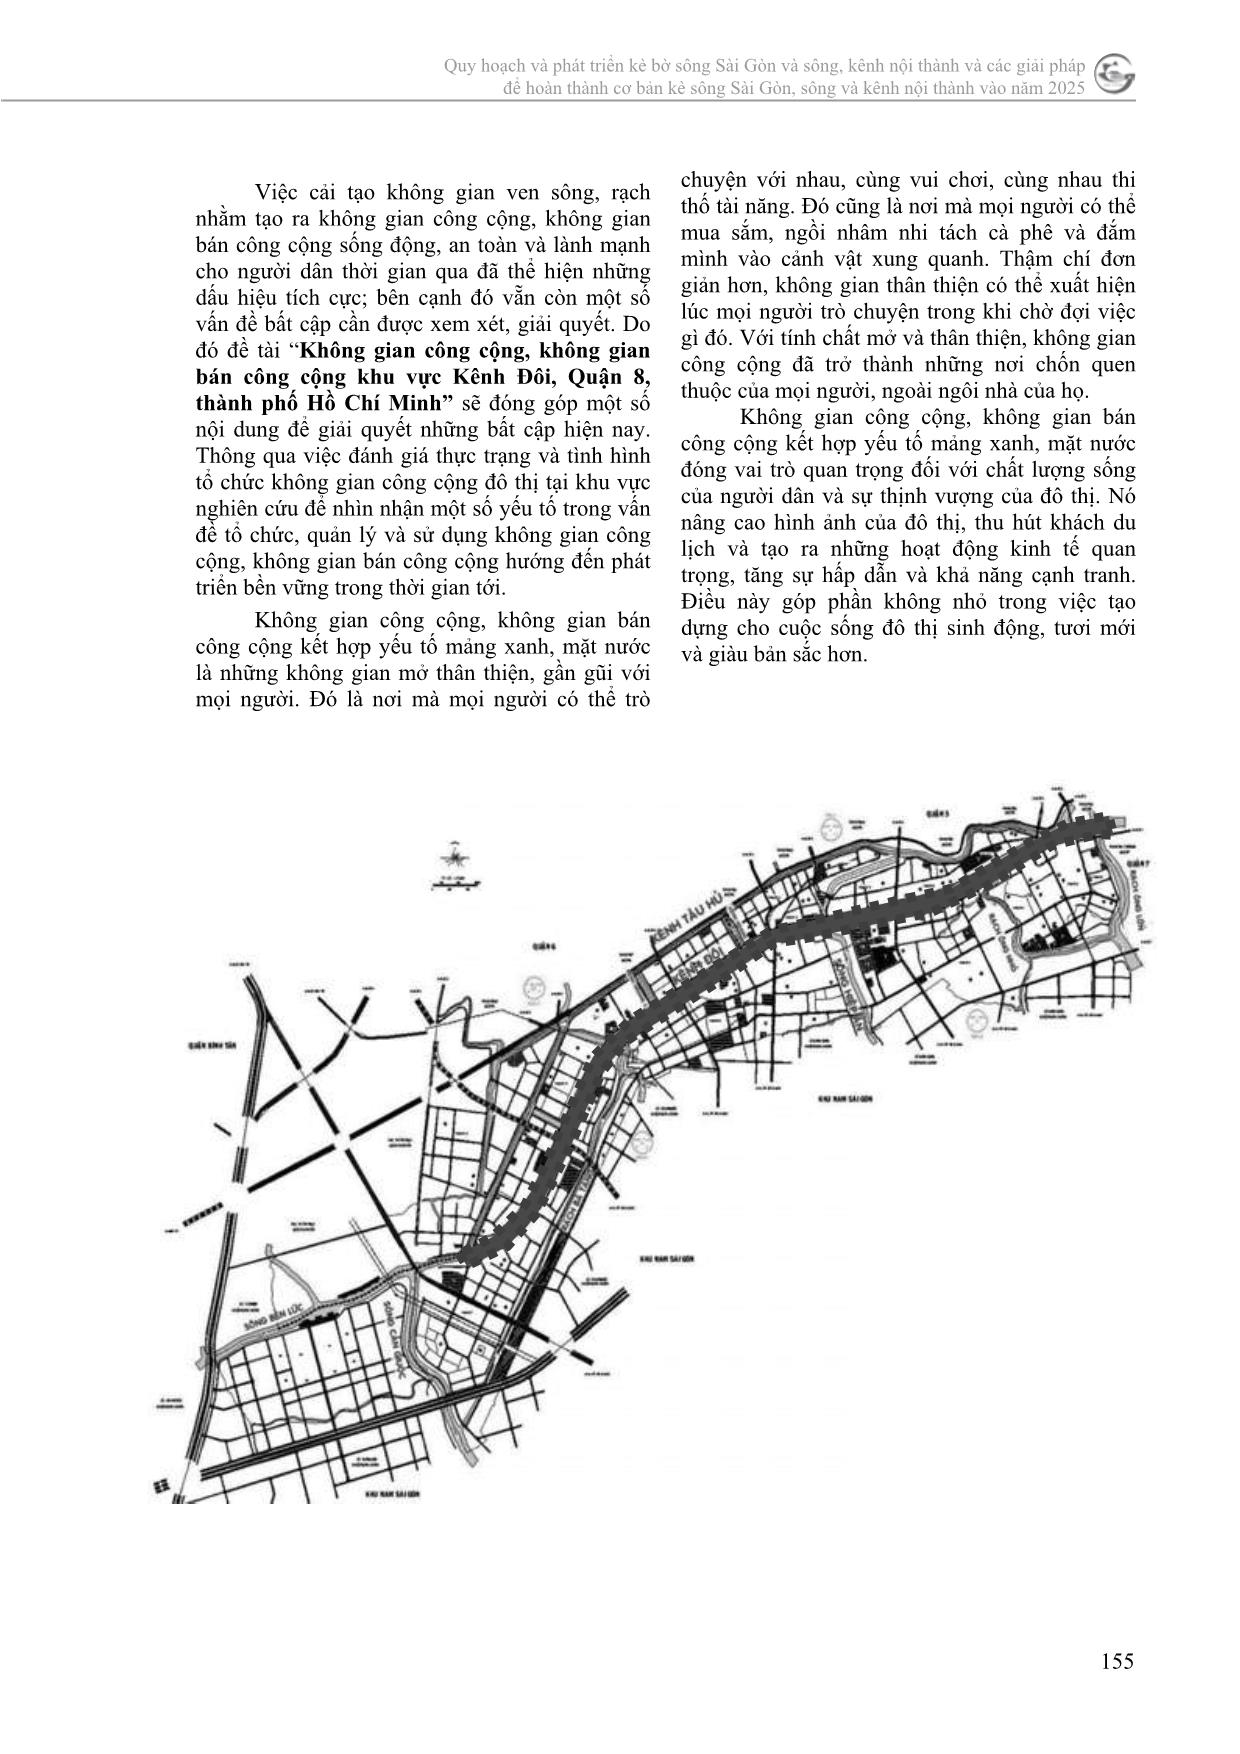 Không gian công cộng, không gian bán công cộng khu vực kênh đôi, quận 8, thành phố Hồ Chí Minh trang 2